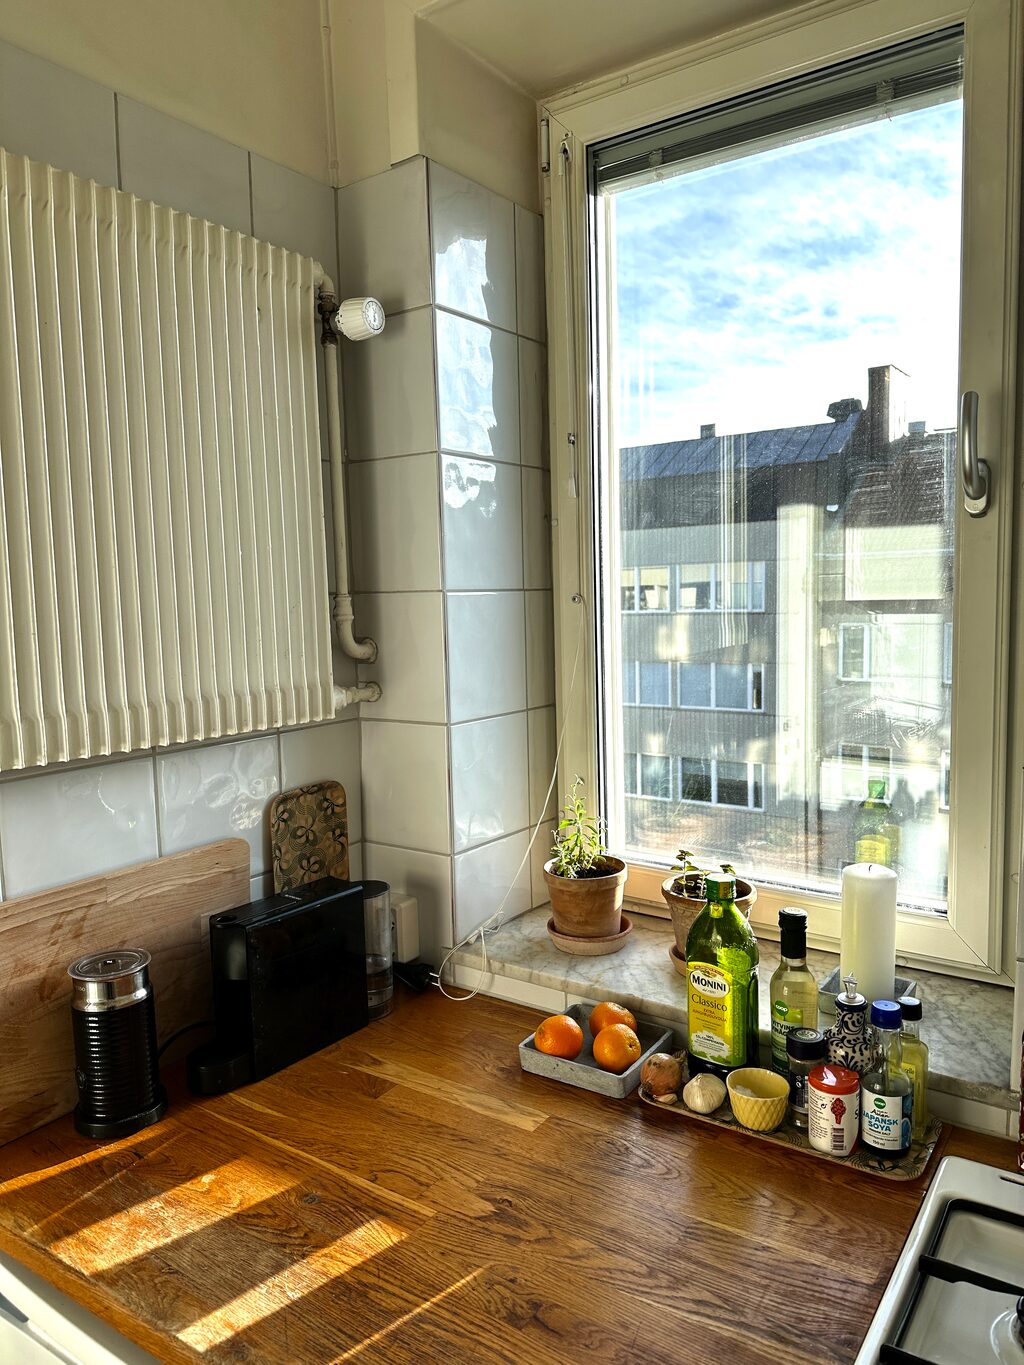 Lägenhetsbyte - Bondegatan 58, 116 33 Stockholm